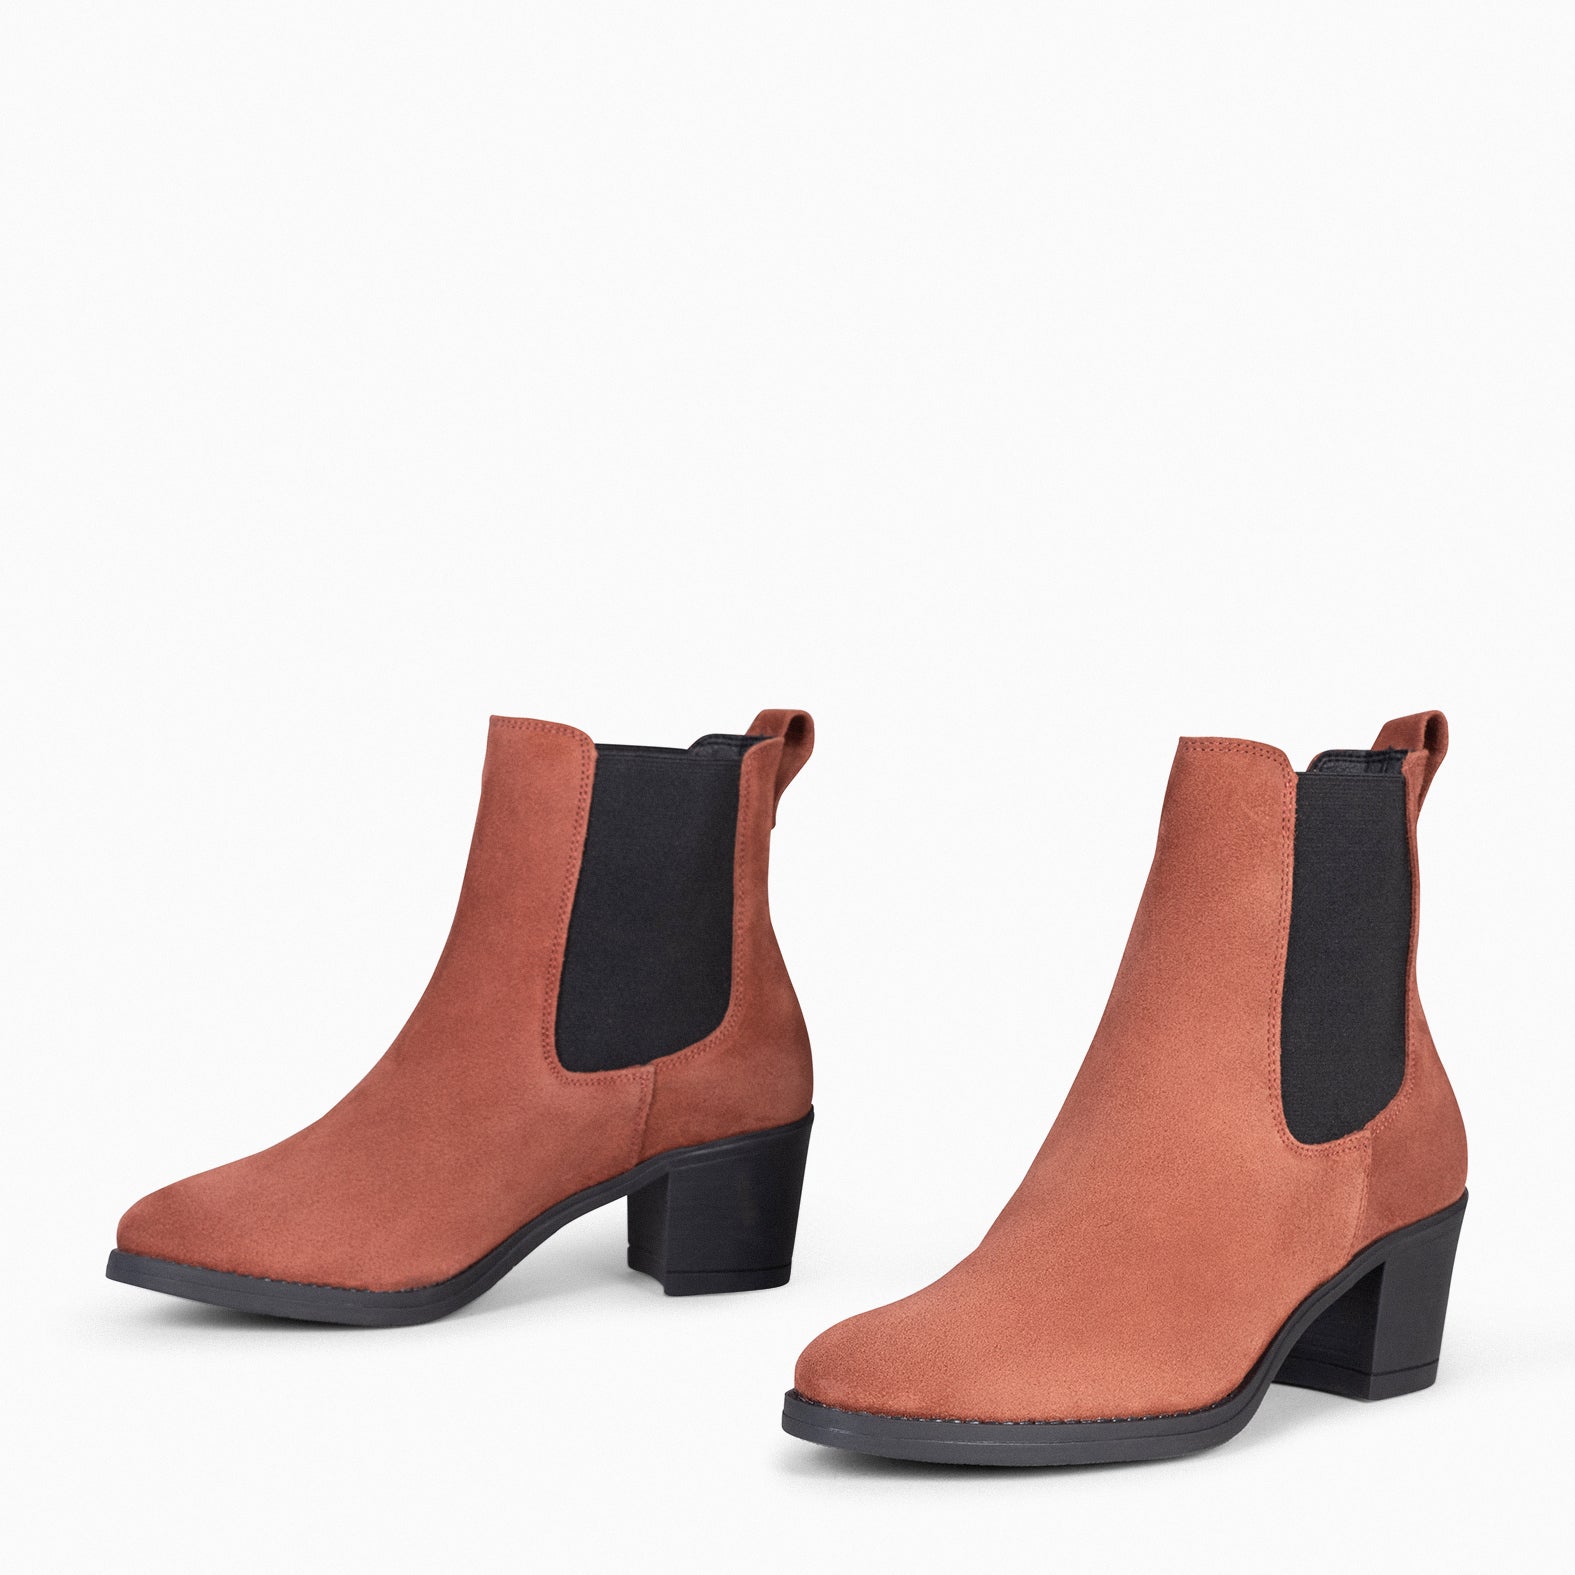 NEW CHELSEA - BRICK Women High heeled booties 